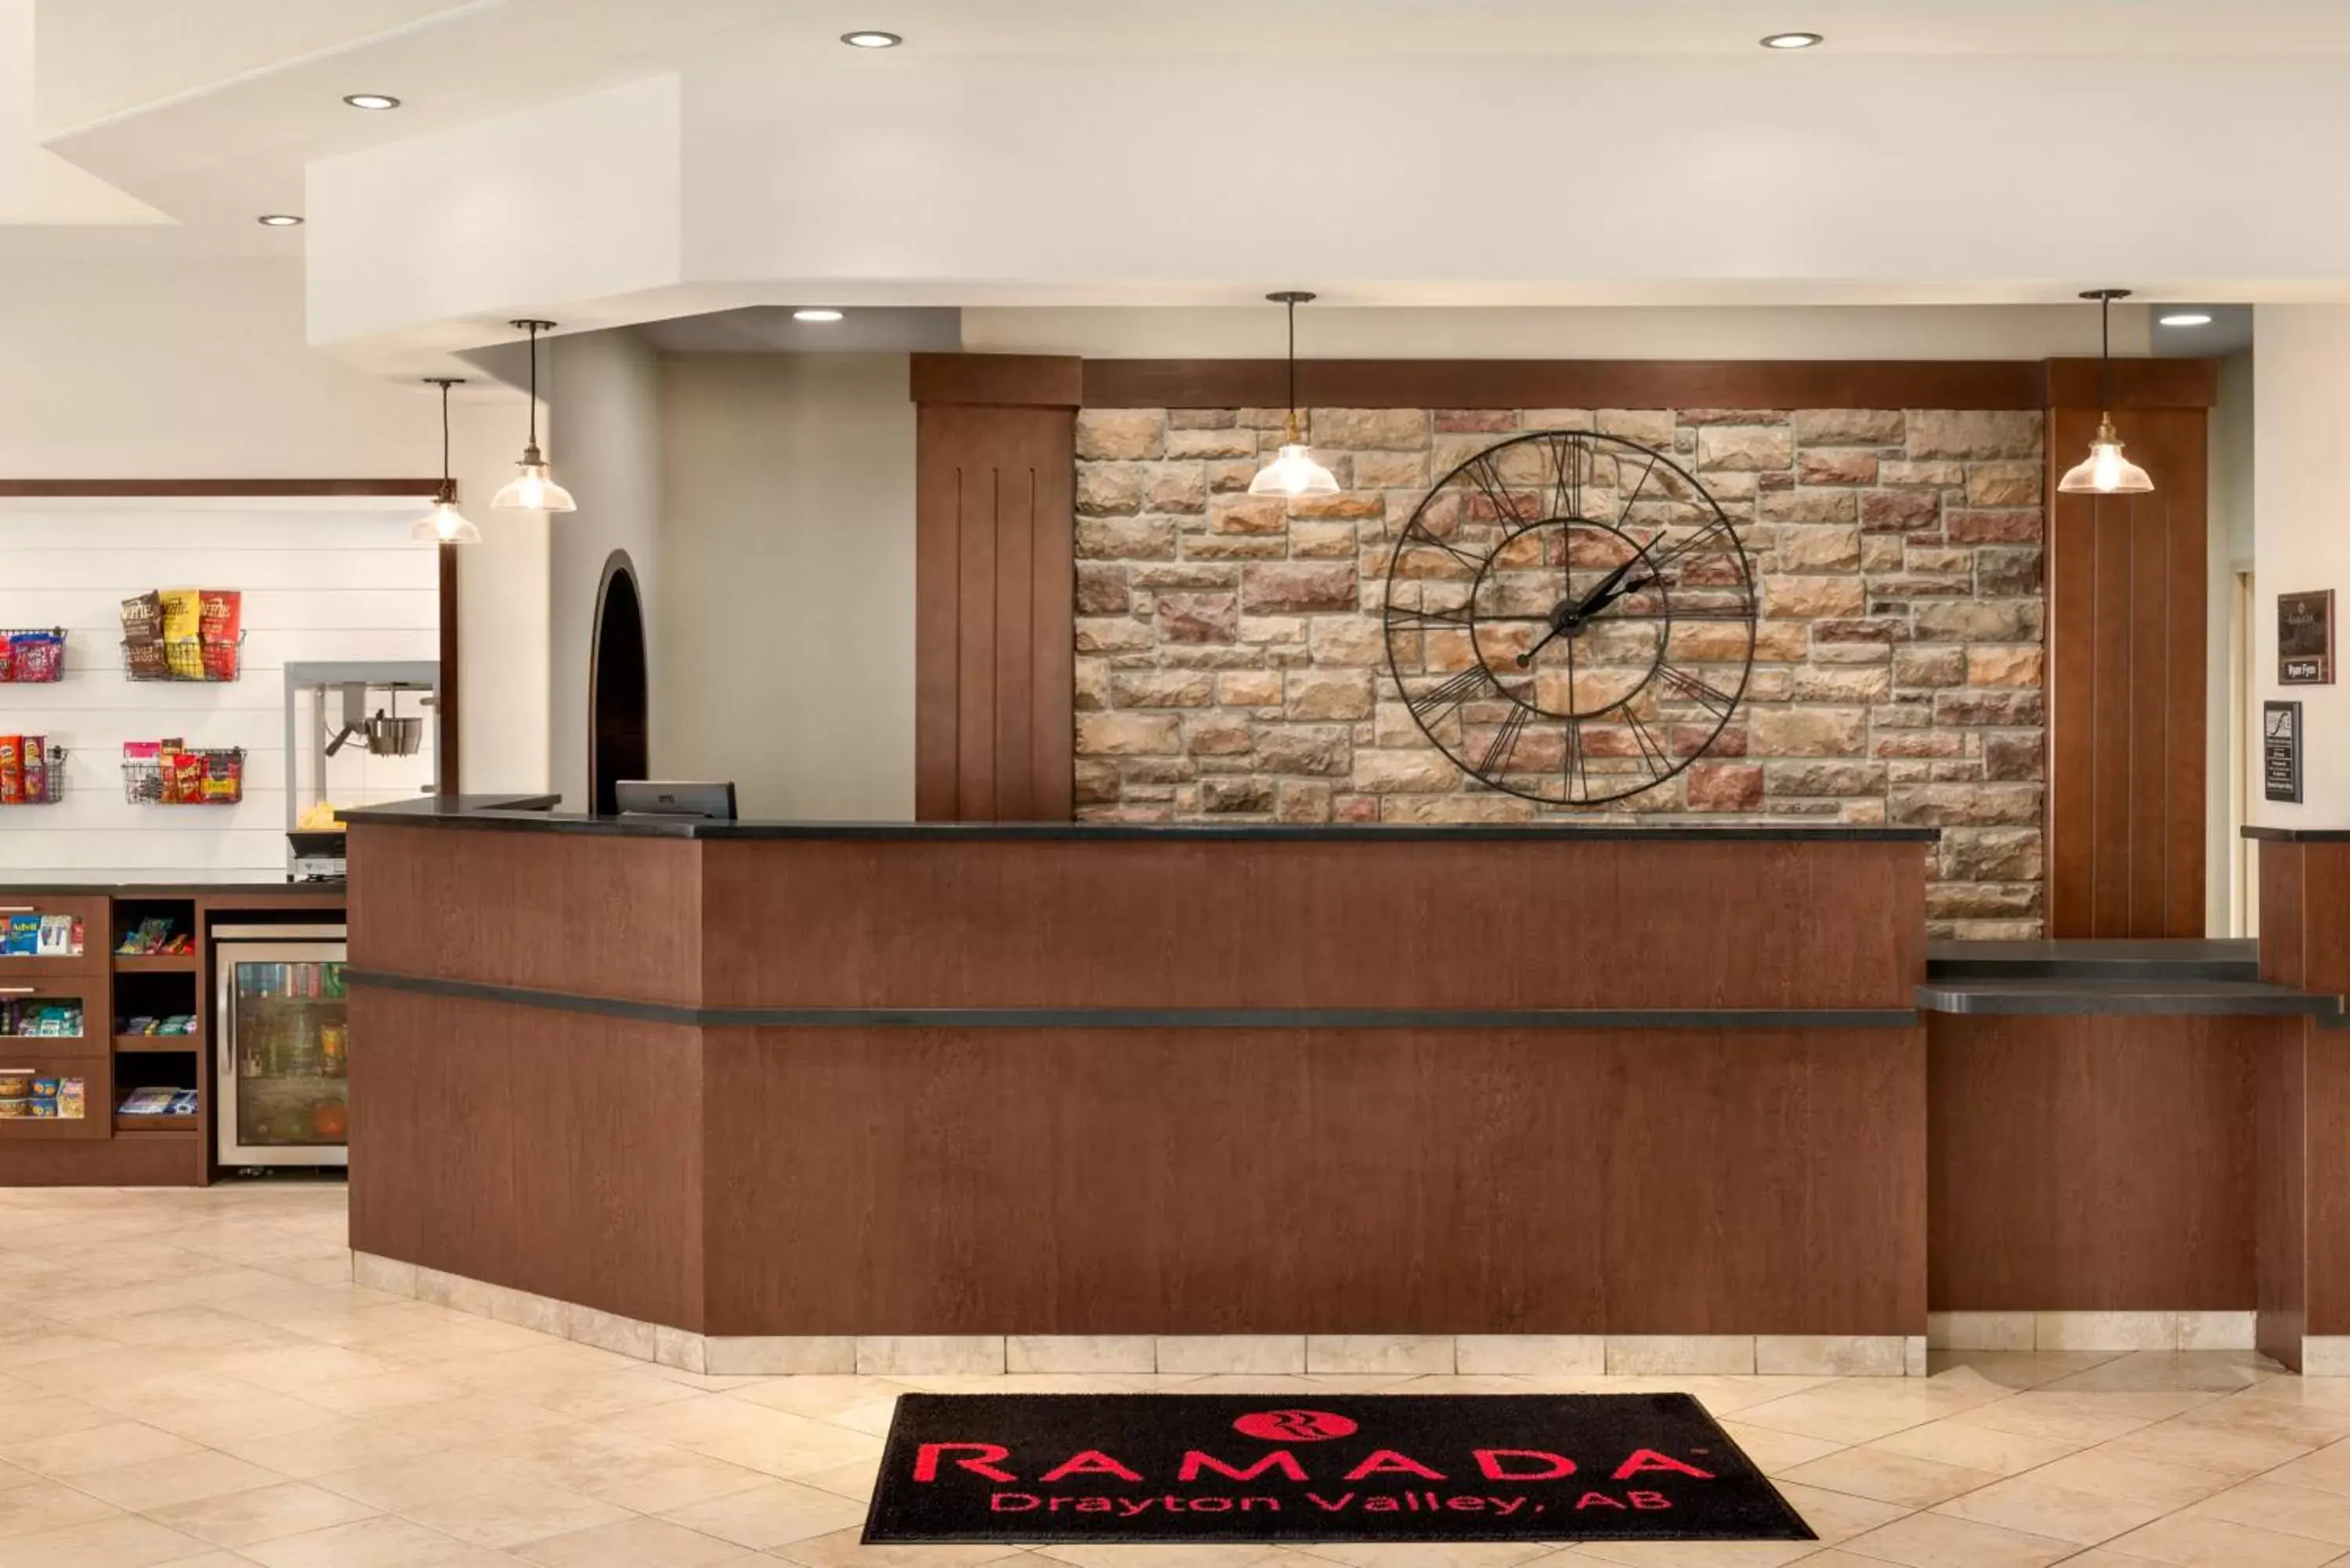 Lobby or reception, Lobby/Reception in Ramada by Wyndham Drayton Valley